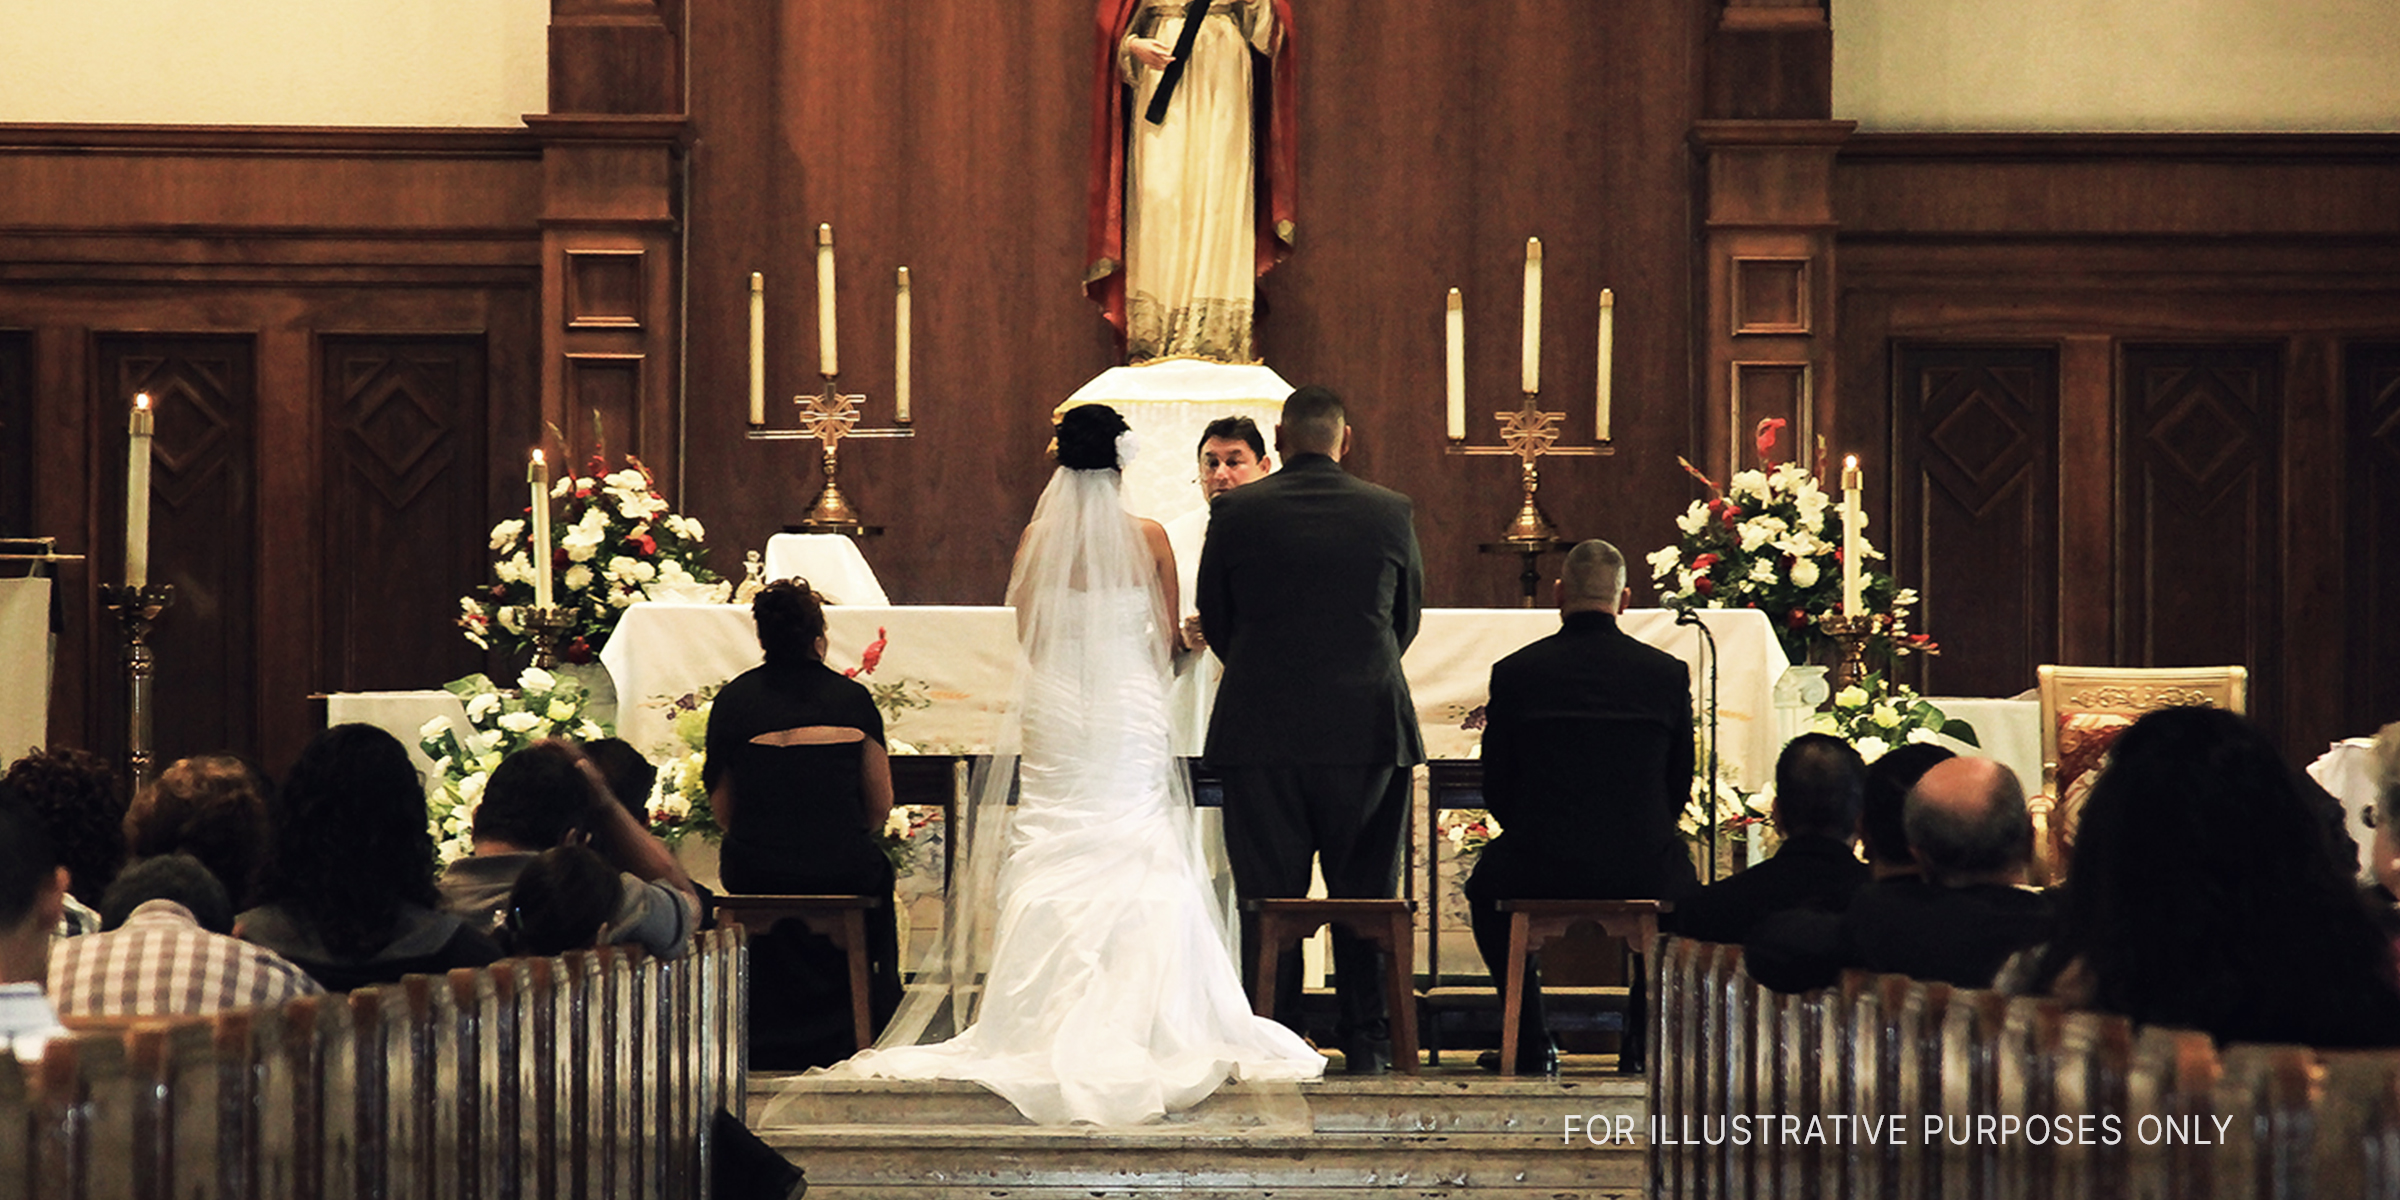 Braut und Bräutigam stehen in einer Kirche | Quelle: Flickr/demxx (CC BY 2.0)